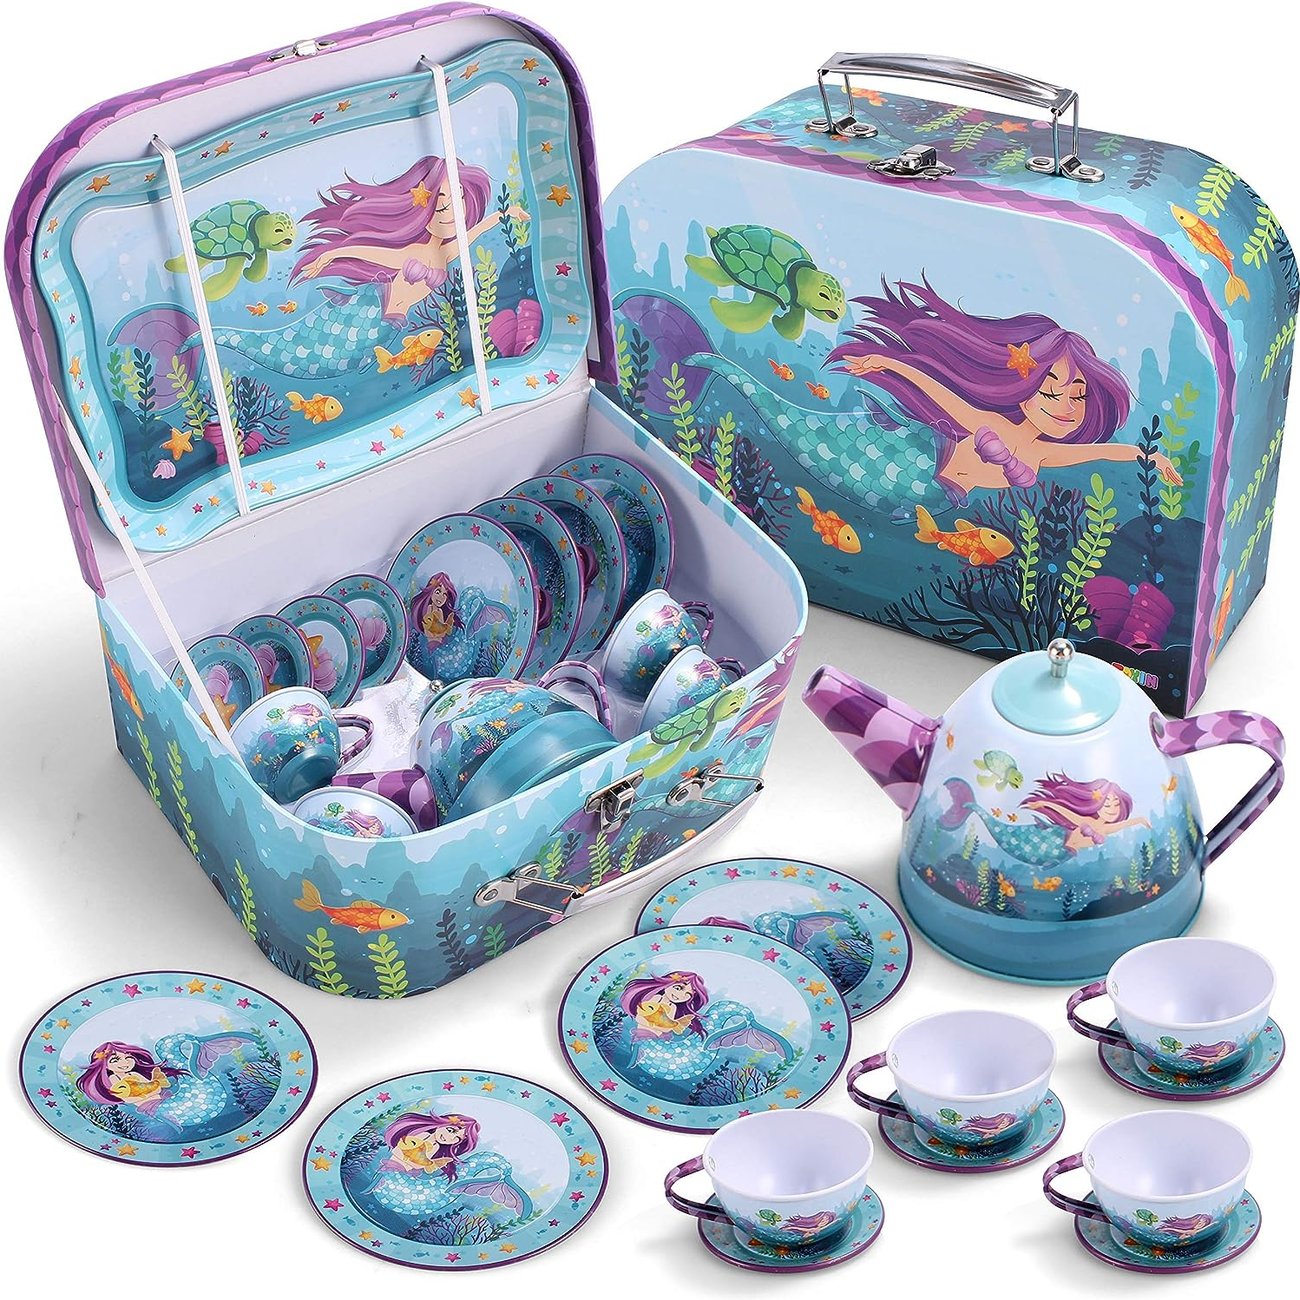 JOYIN Meerjungfrau Teekanne Set für Kinder